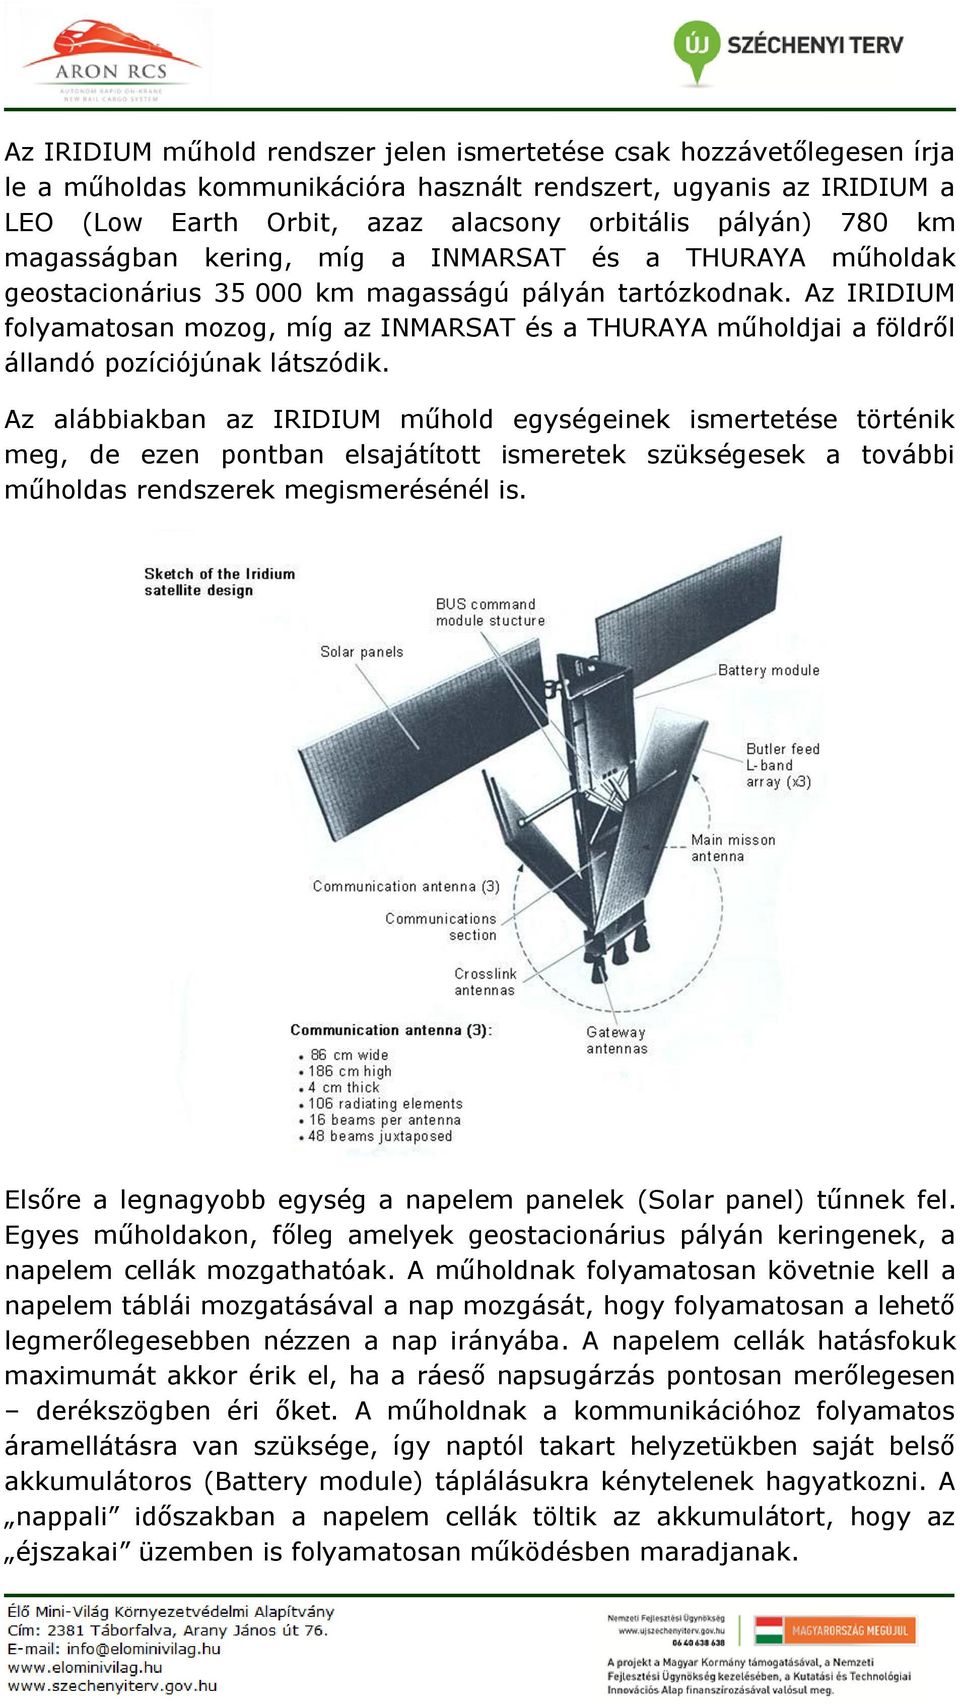 Az IRIDIUM folyamatosan mozog, míg az INMARSAT és a THURAYA műholdjai a földről állandó pozíciójúnak látszódik.